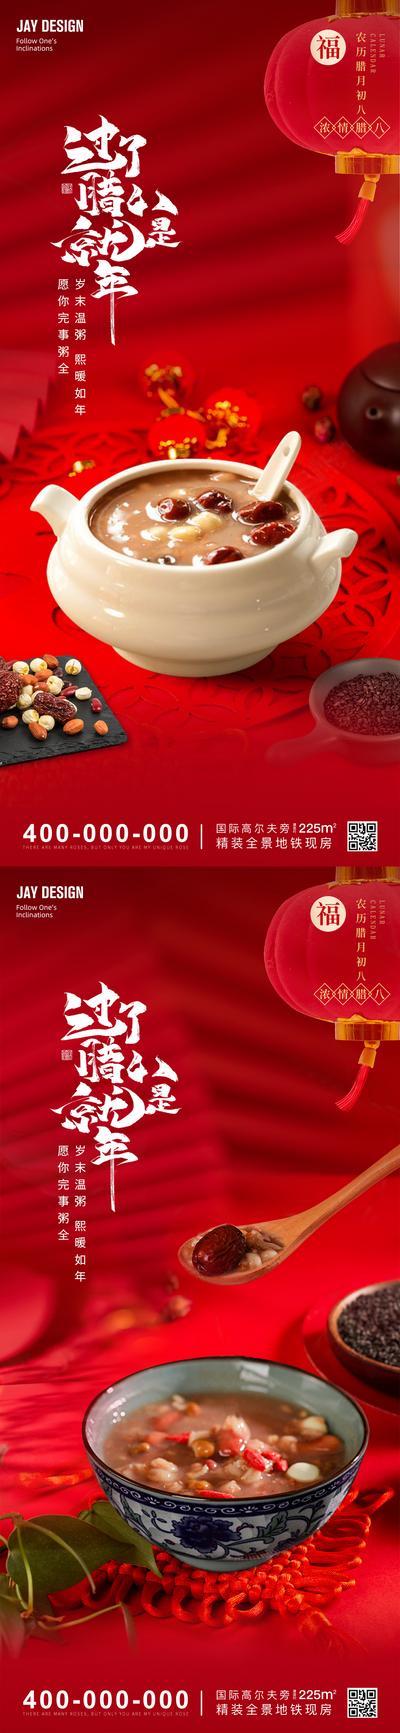 南门网 广告 海报 节日 腊八 中式 红金 房地产 中国 传统节日 腊八节 腊八粥 意境 灯笼